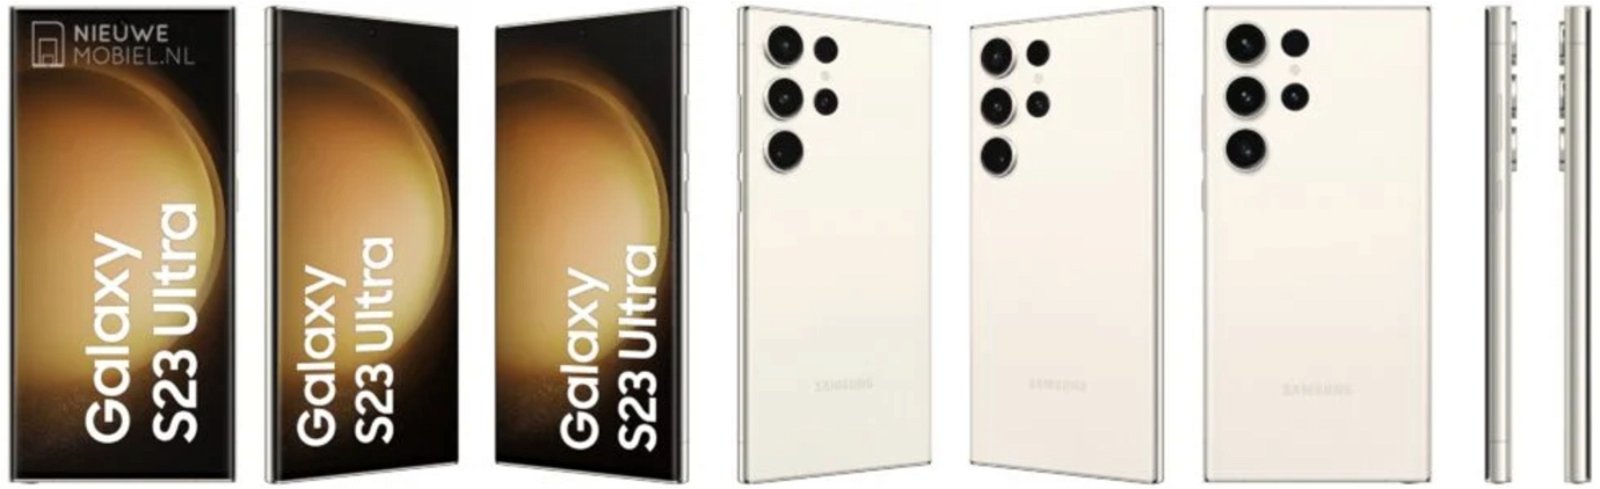 Filtración bomba: los precios de los Samsung Galaxy S23 al descubierto